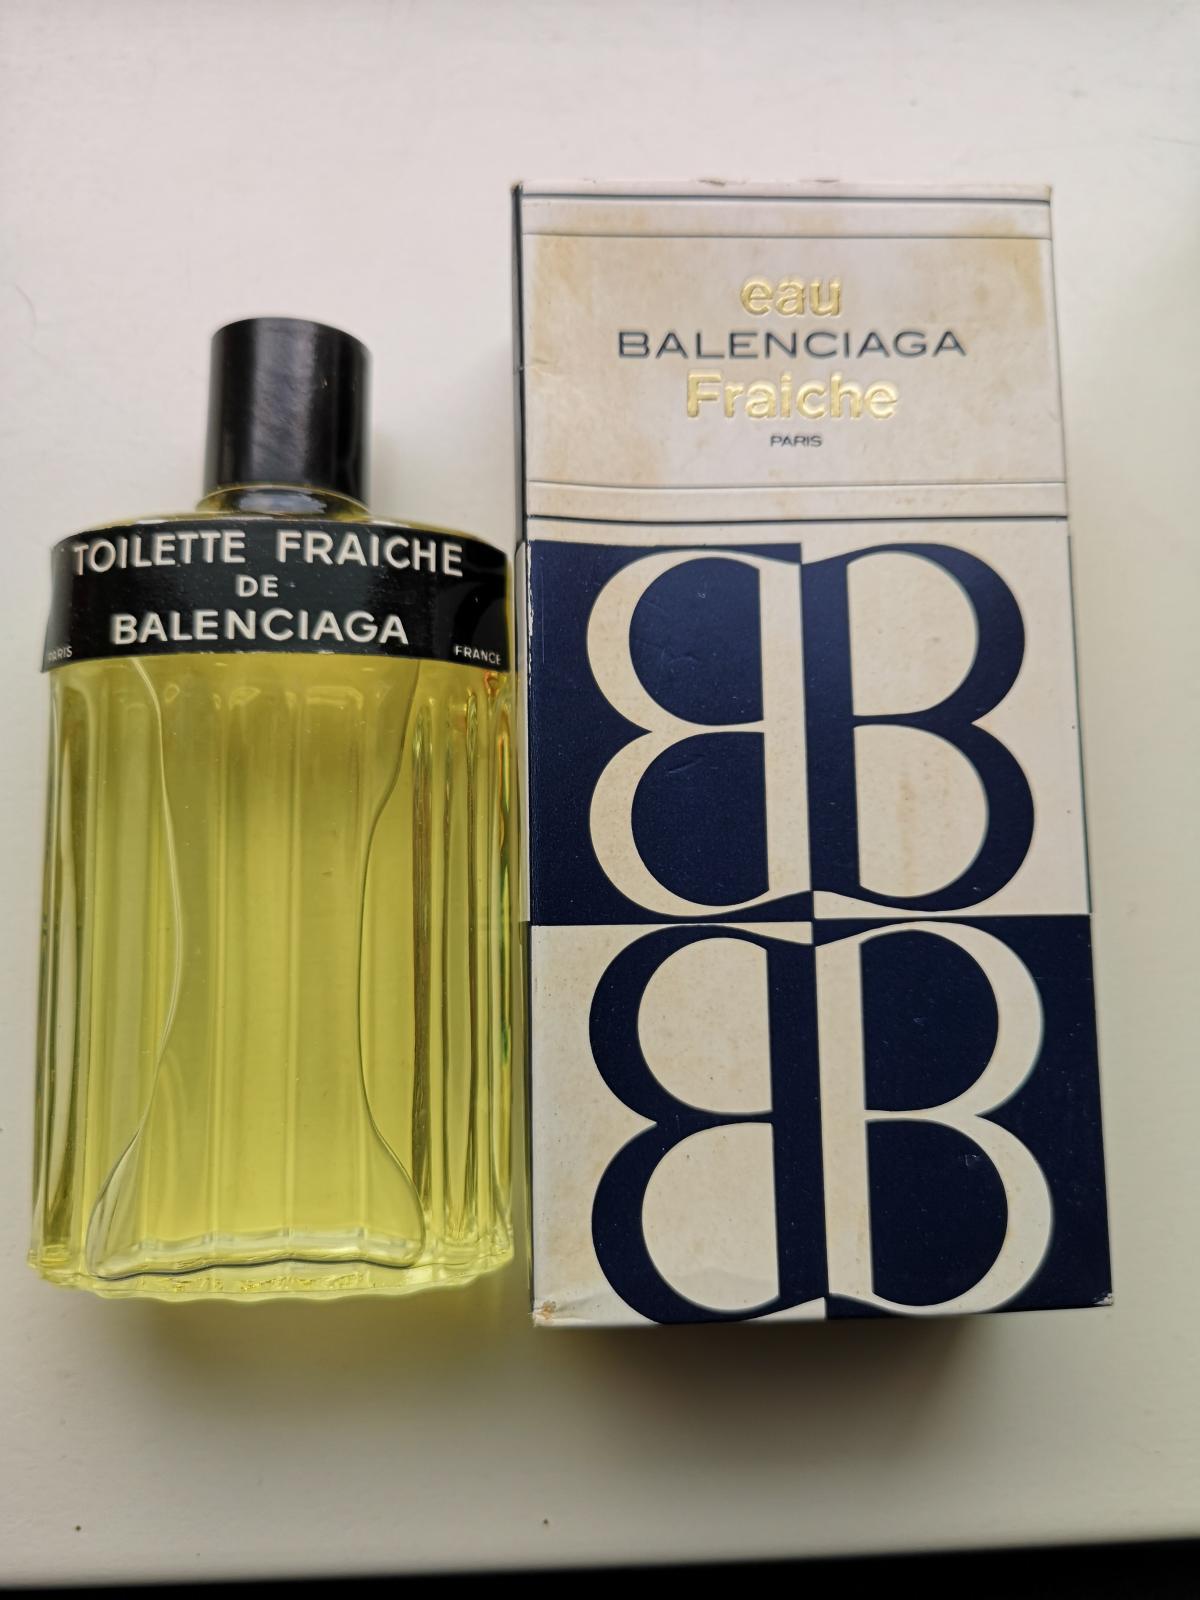 Toilette Fraîche Balenciaga - a fragrance for women and 1966